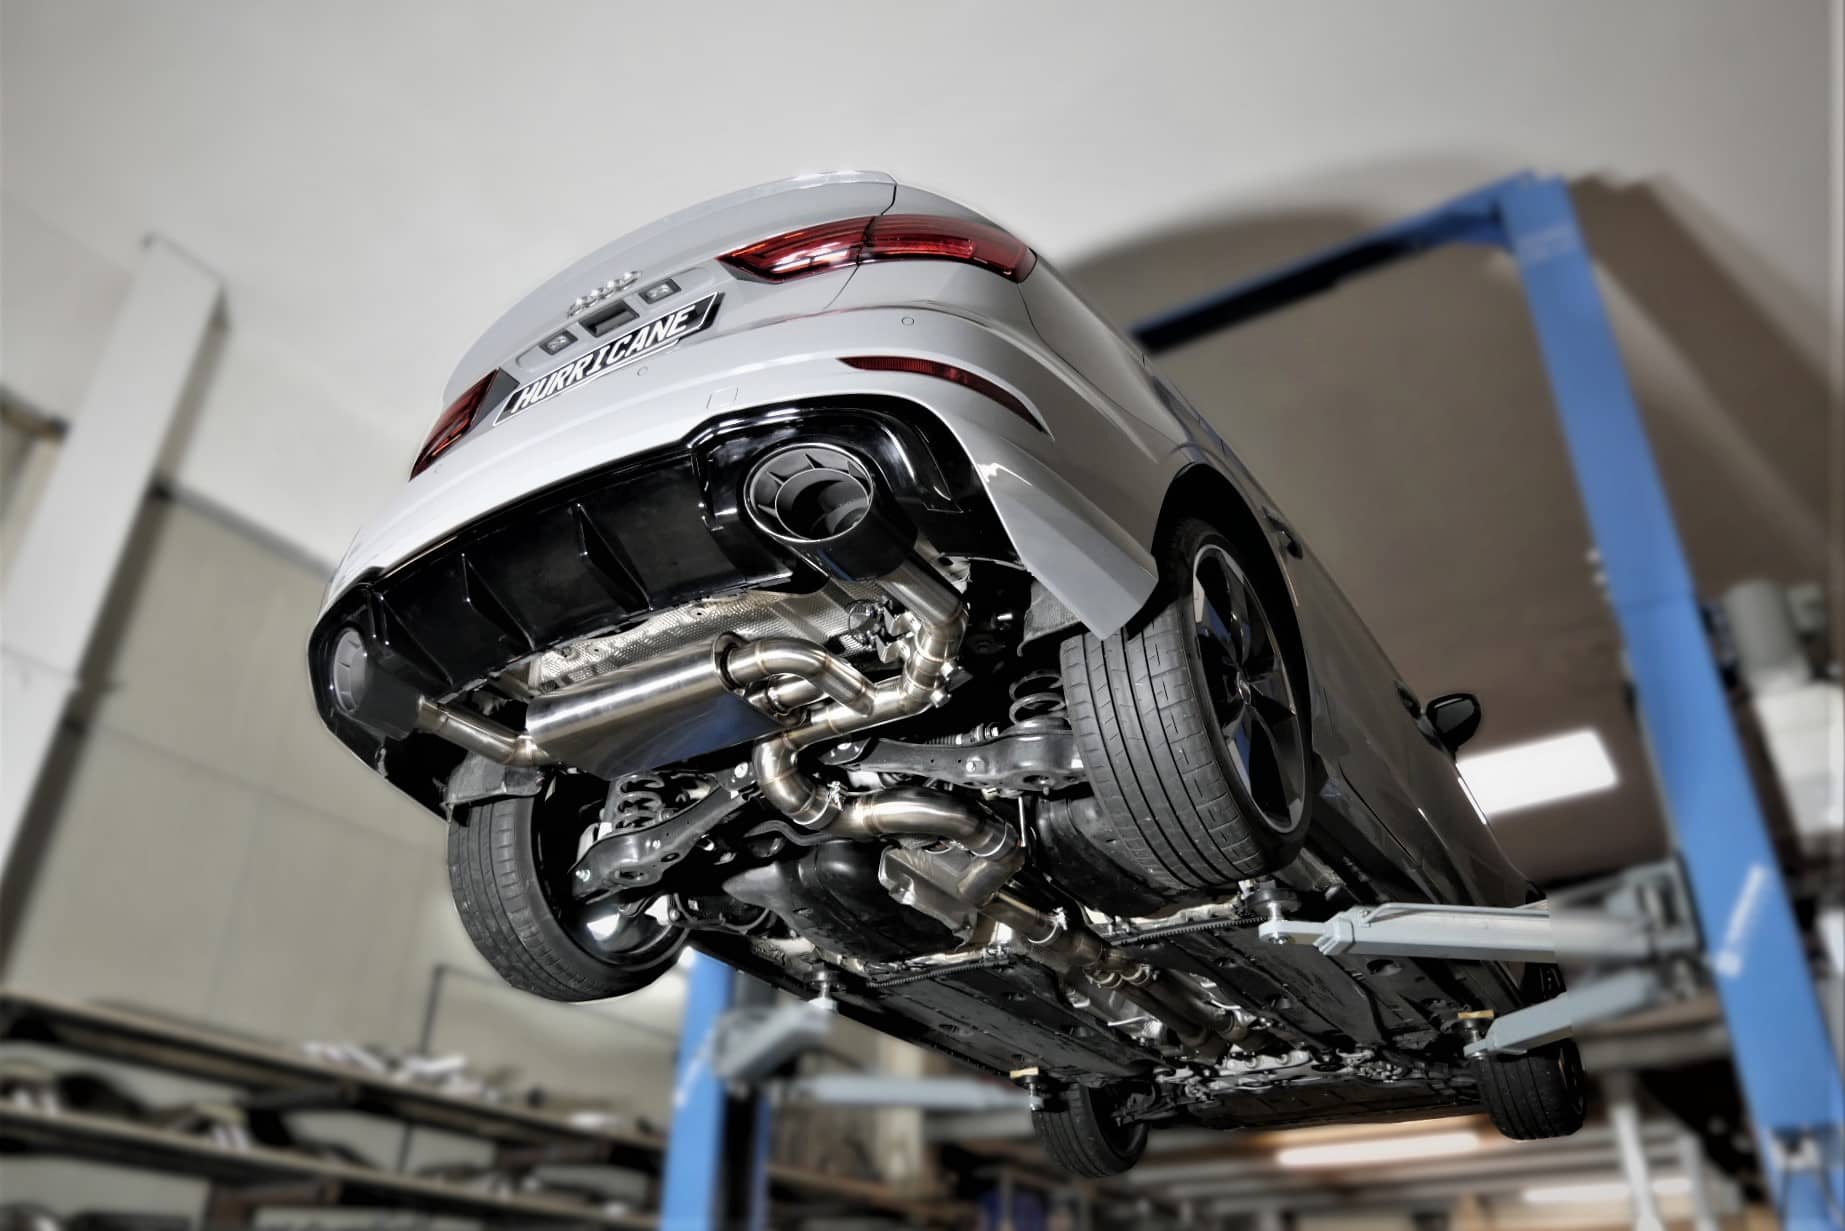 Hurricane 3,5" Auspuffanlage für Audi RS3 8V 400PS FL Limo. OPF